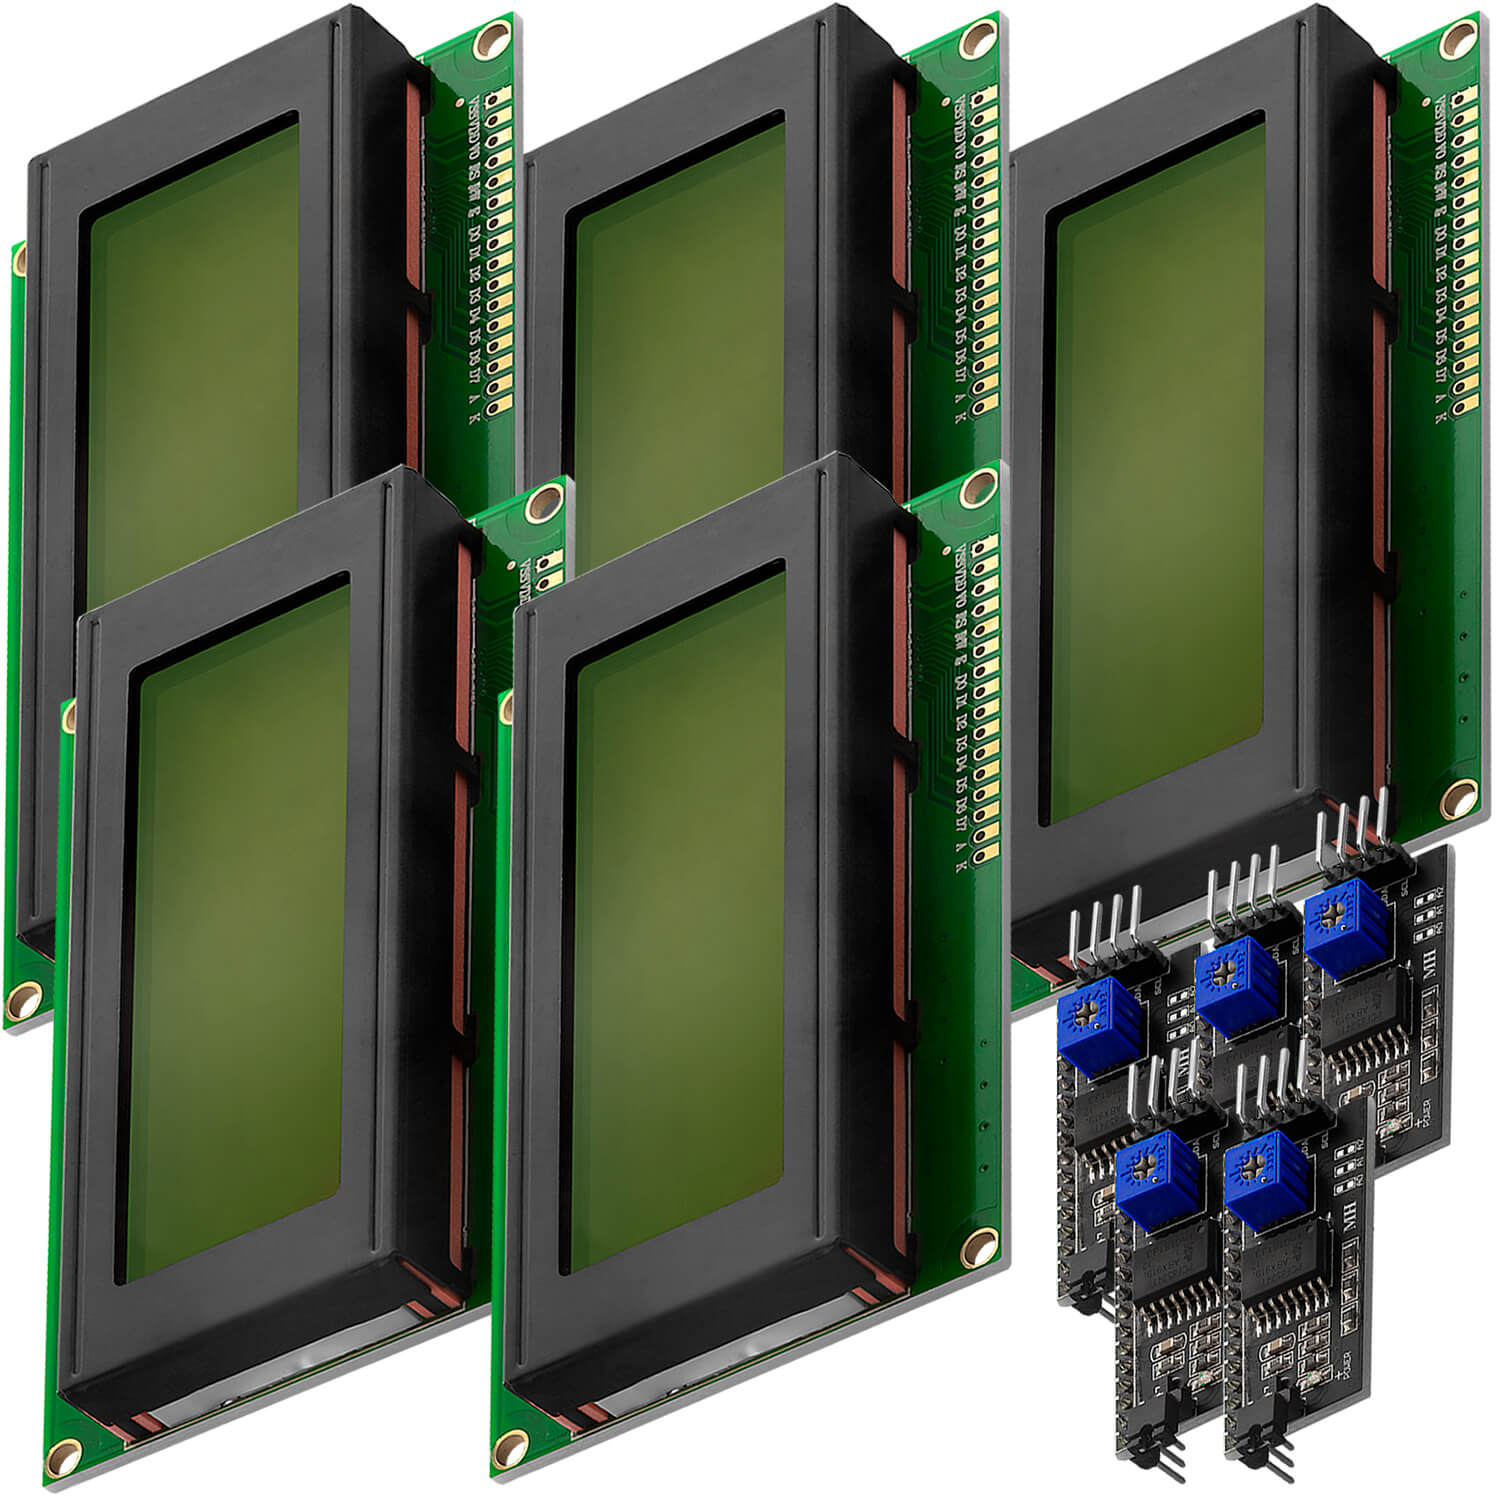 HD44780 2004 LCD Display Bundle 4x20 Zeichen mit I2C Schnittstelle Grün - AZ-Delivery